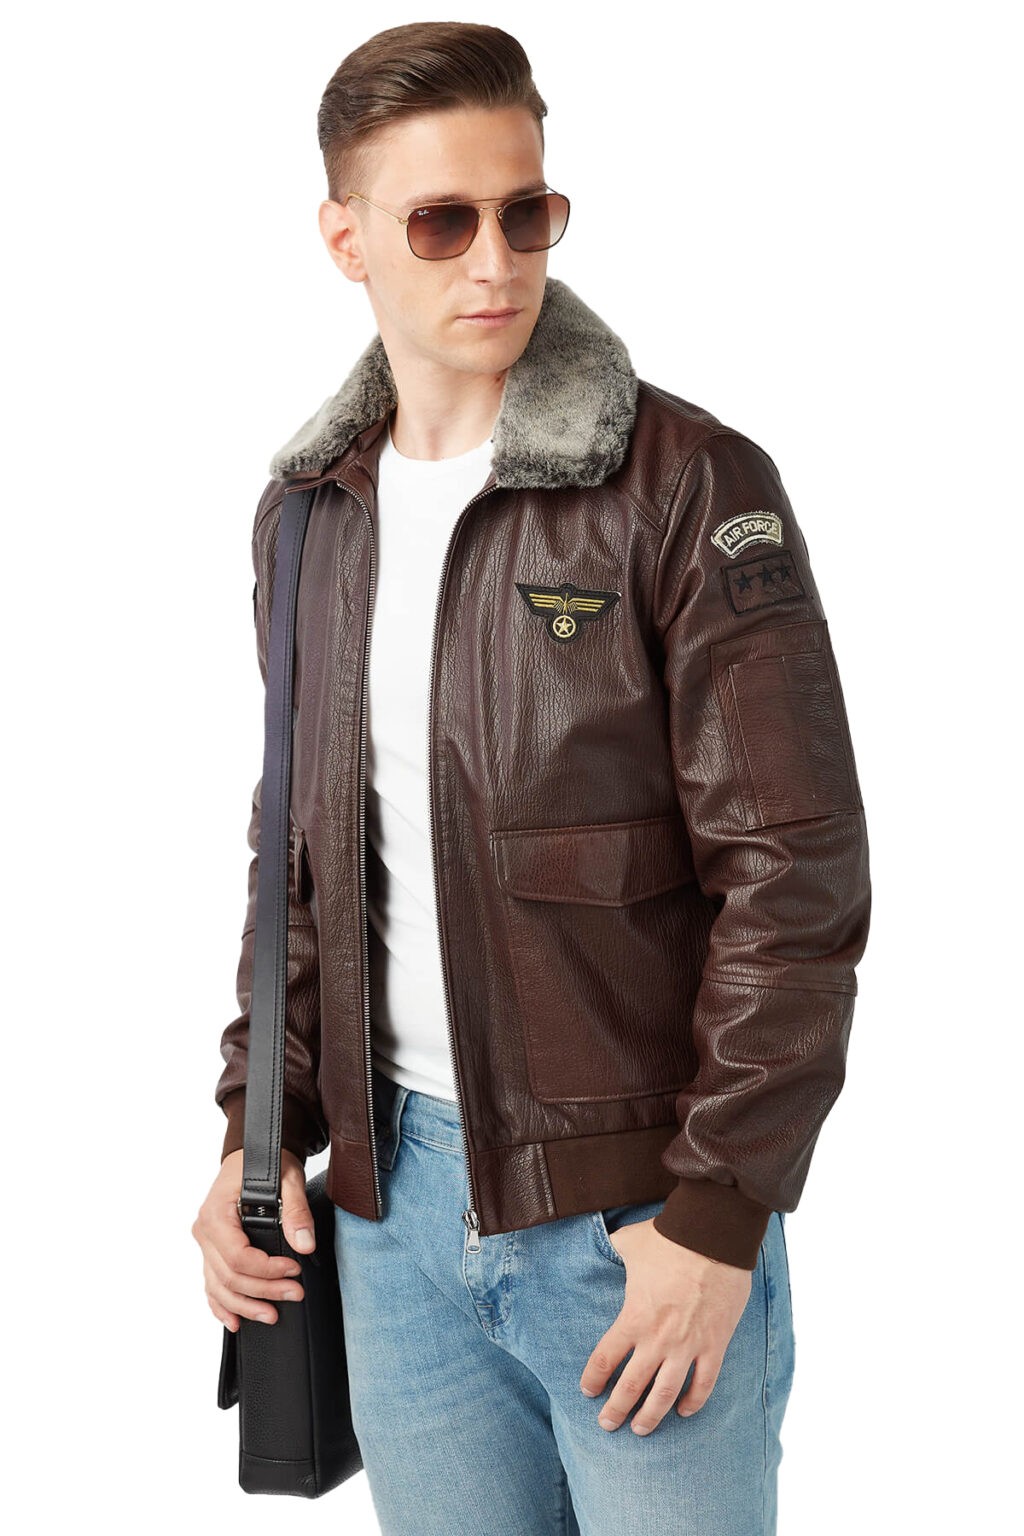 100% Mens Black Leather Jacket | Affordable Leather Coat & Jacket Men's